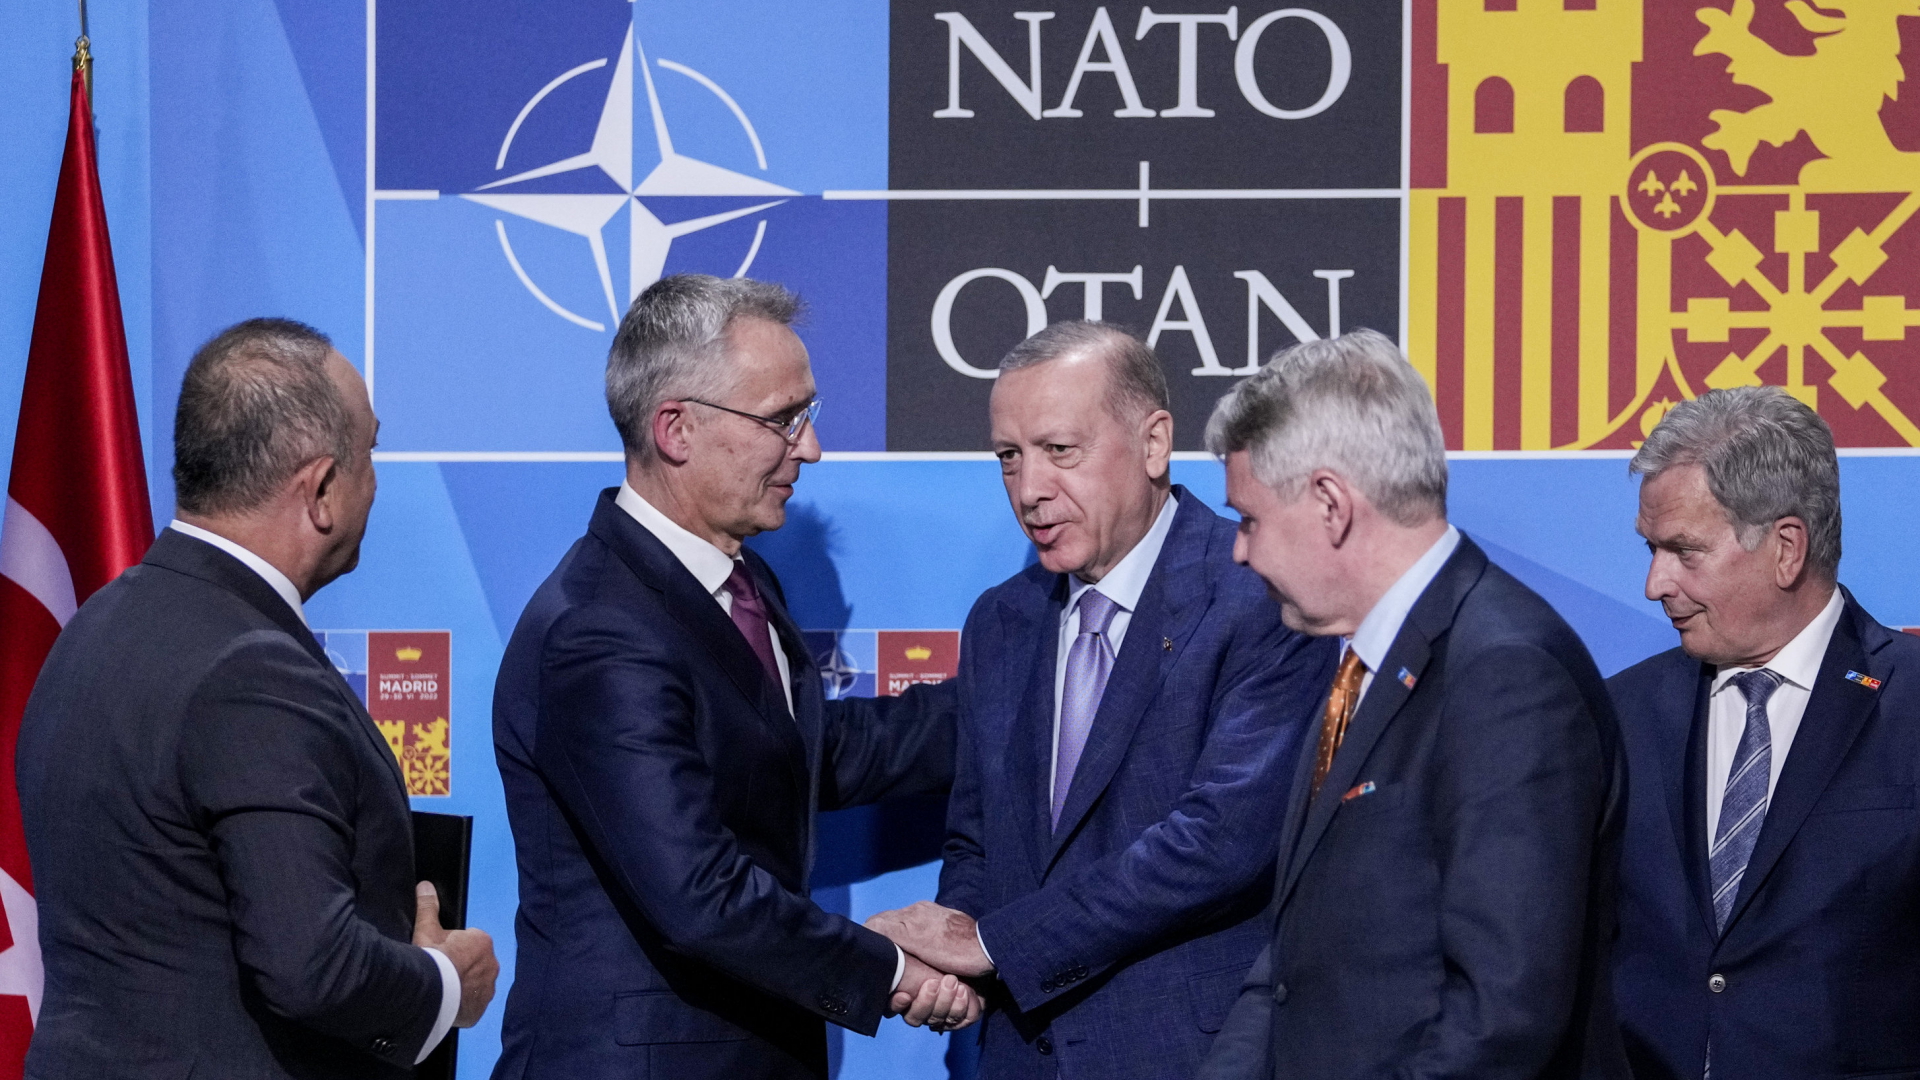 NATO-Generalsekretär Jens Stoltenberg schüttelt dem türkischen Präsident Recep Tayyip Erdogan die Hand, nachdem bei einem Treffen der Widerstand der Türkei gegen die NATO-Aufnahme Finnlands und Schwedens ausgeräumt werden konnte. | Bildquelle: AP